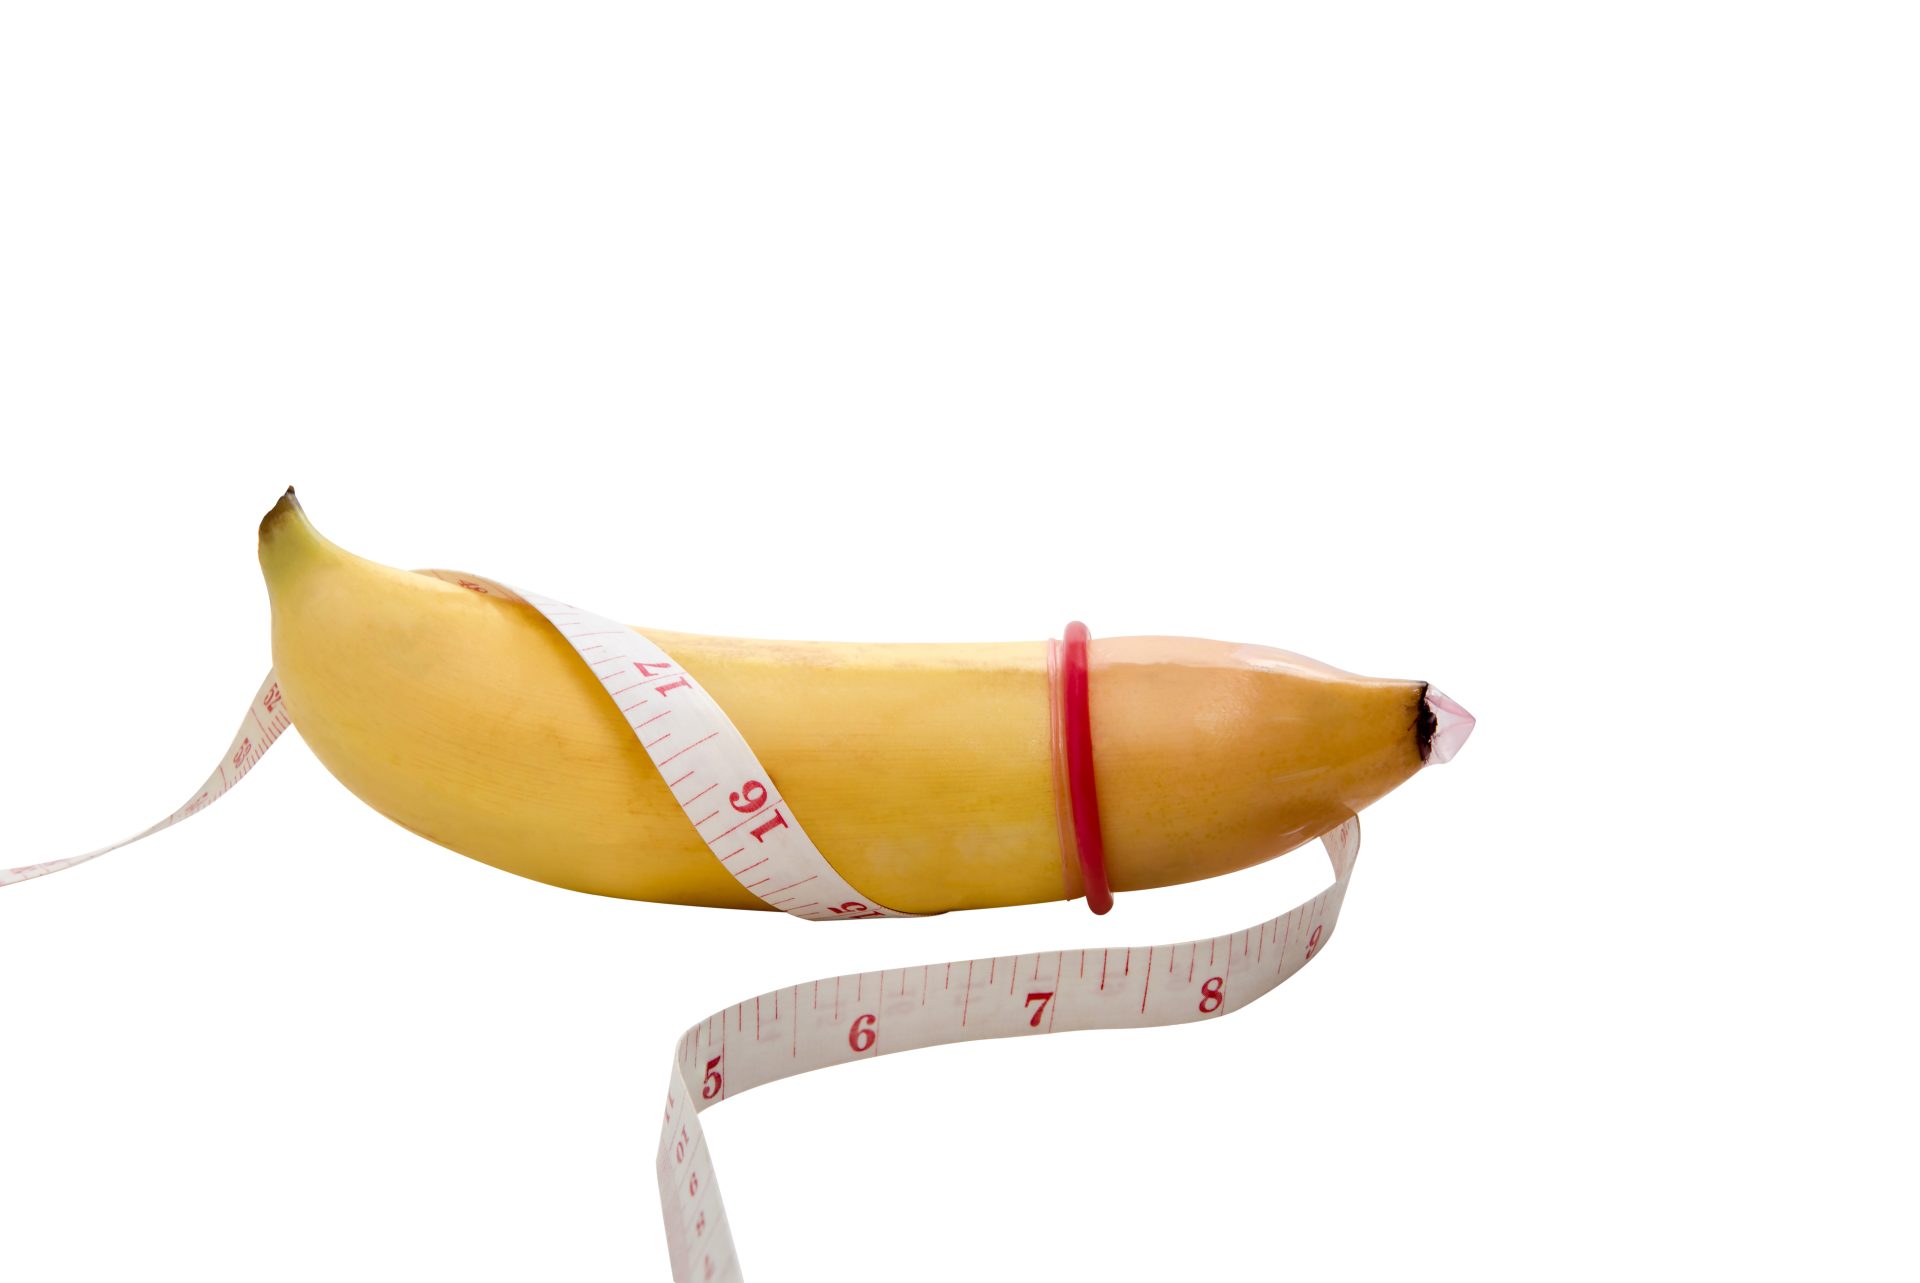 Óvszerméretek bemutatása egy banánon mérőszallaggal